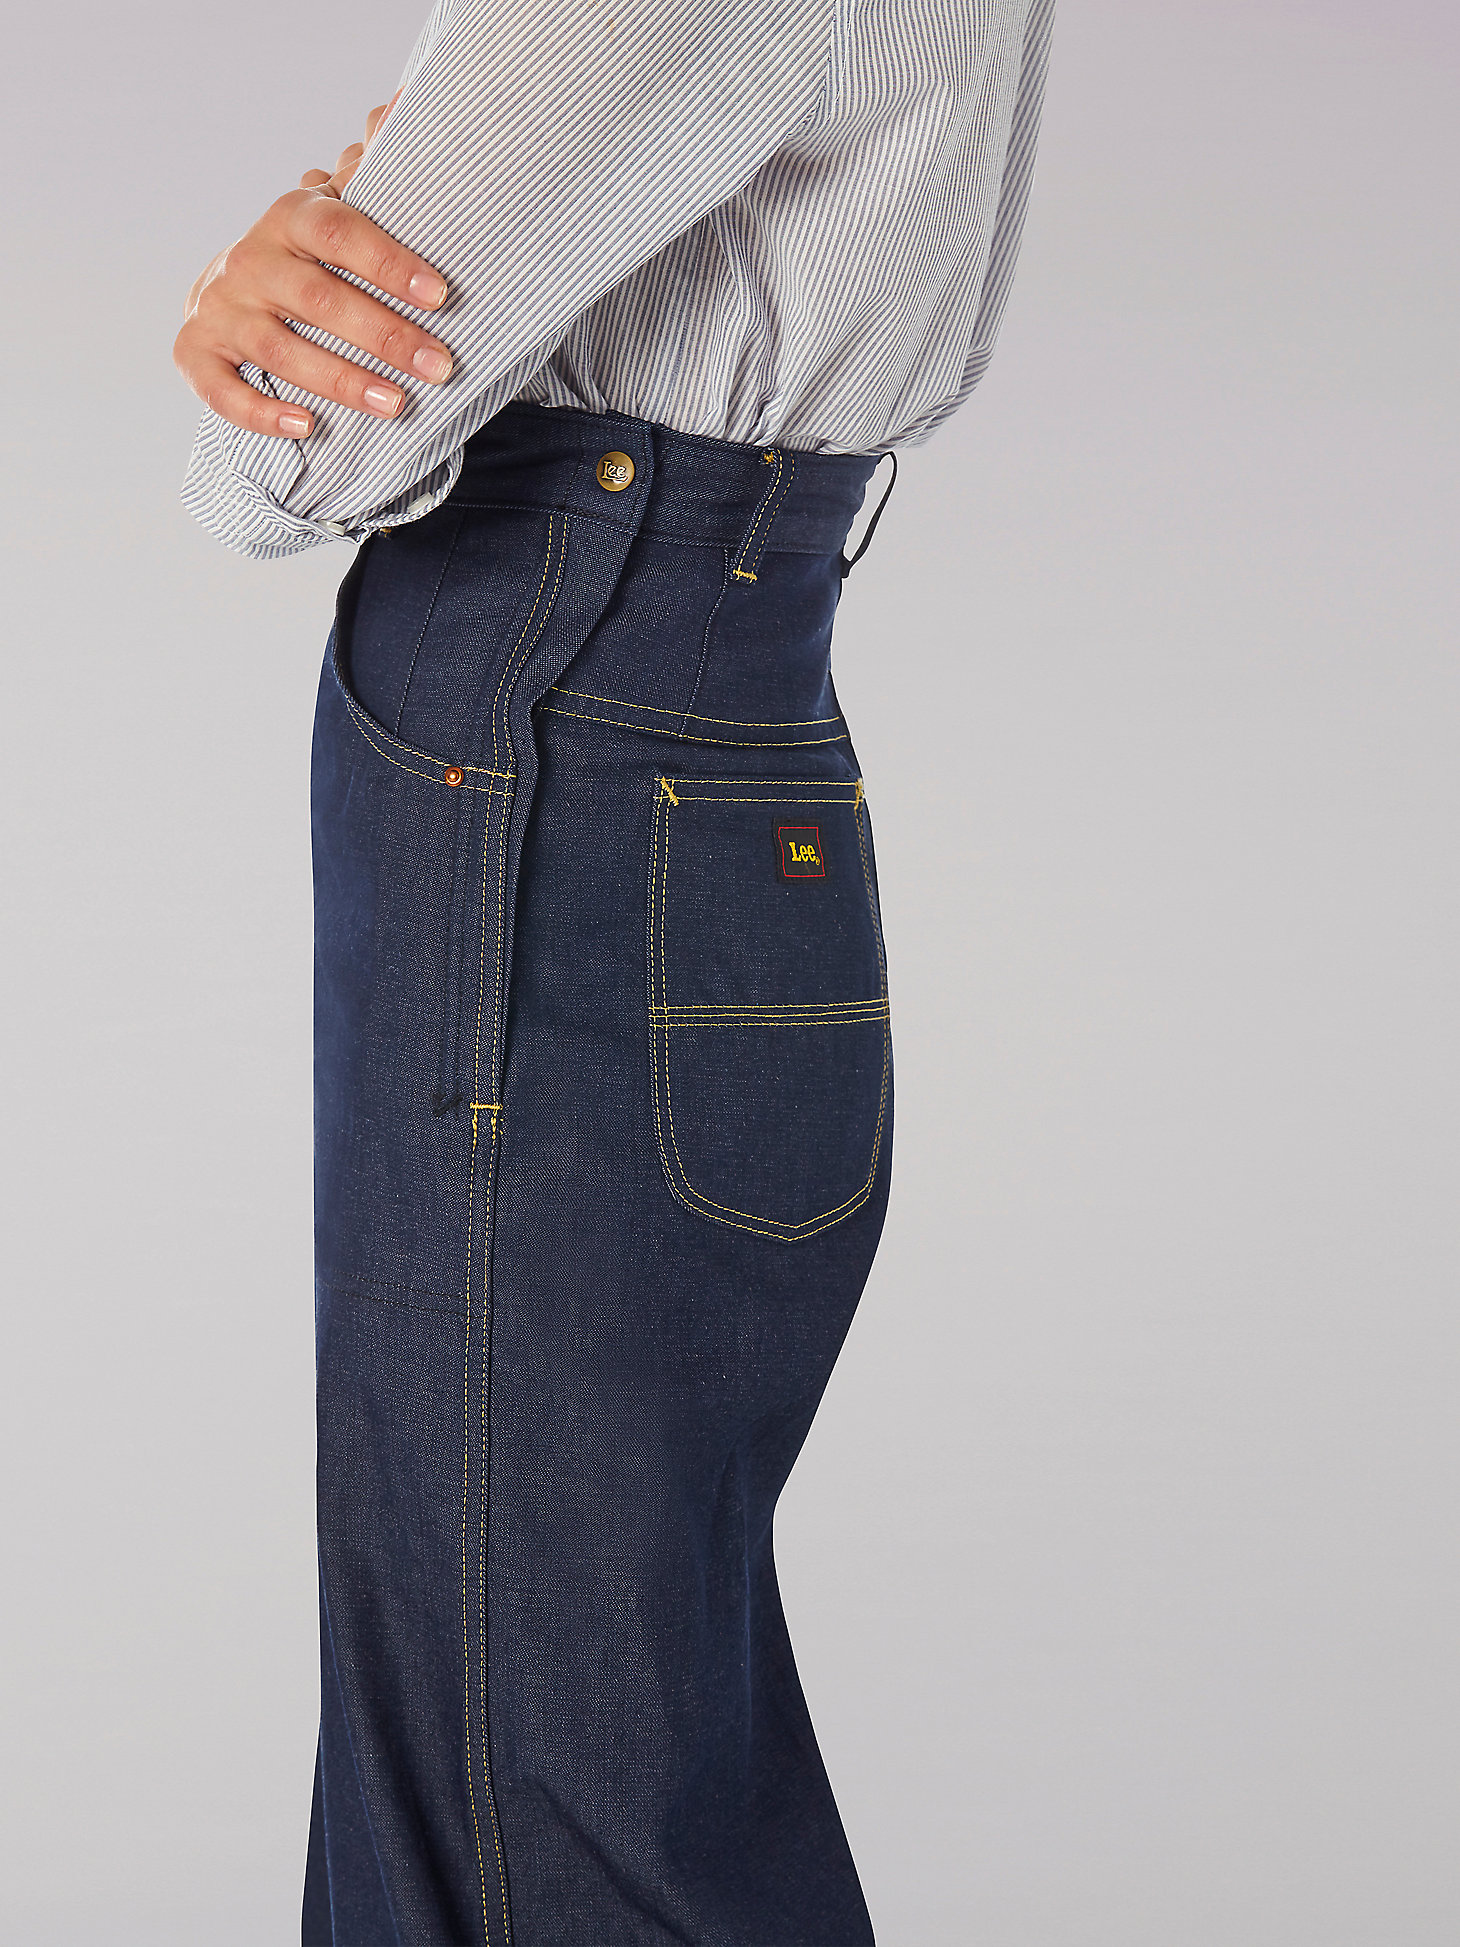 Women's Reissue Rigid Side-Zip All-Purpose Blue Jean